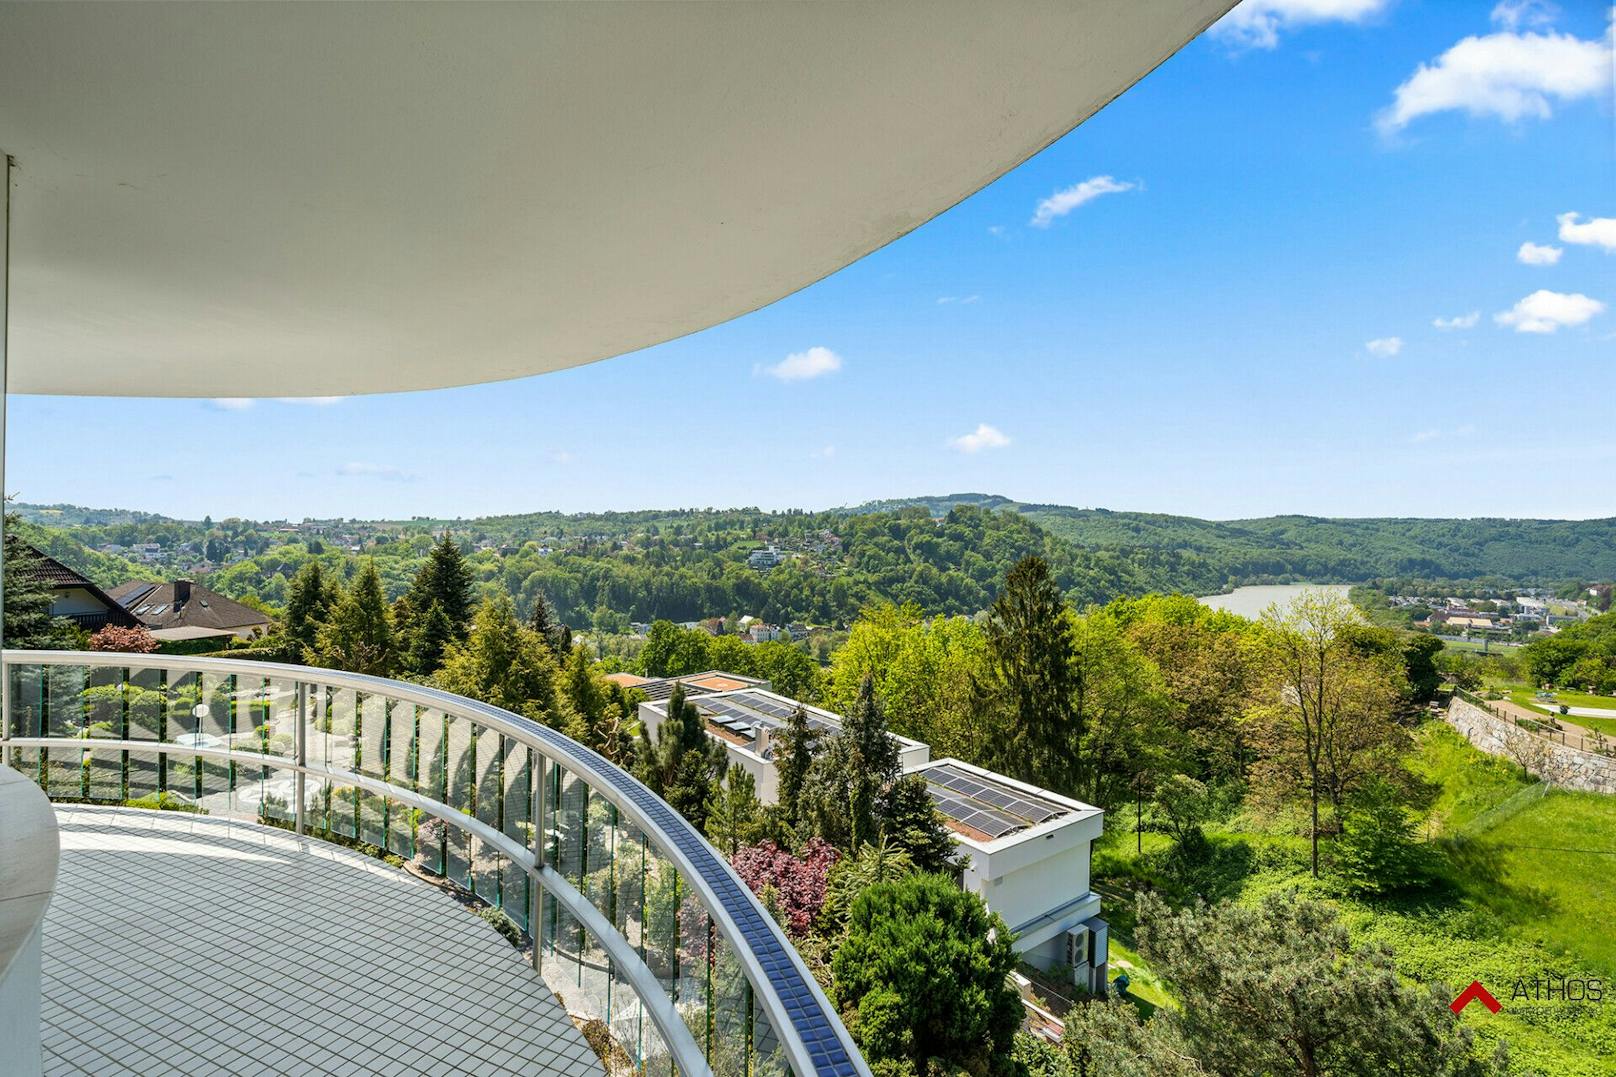 Die so genannte "Villa Rosenbauer" in Linz wird derzeit um 5,6 Millionen Euro angeboten.